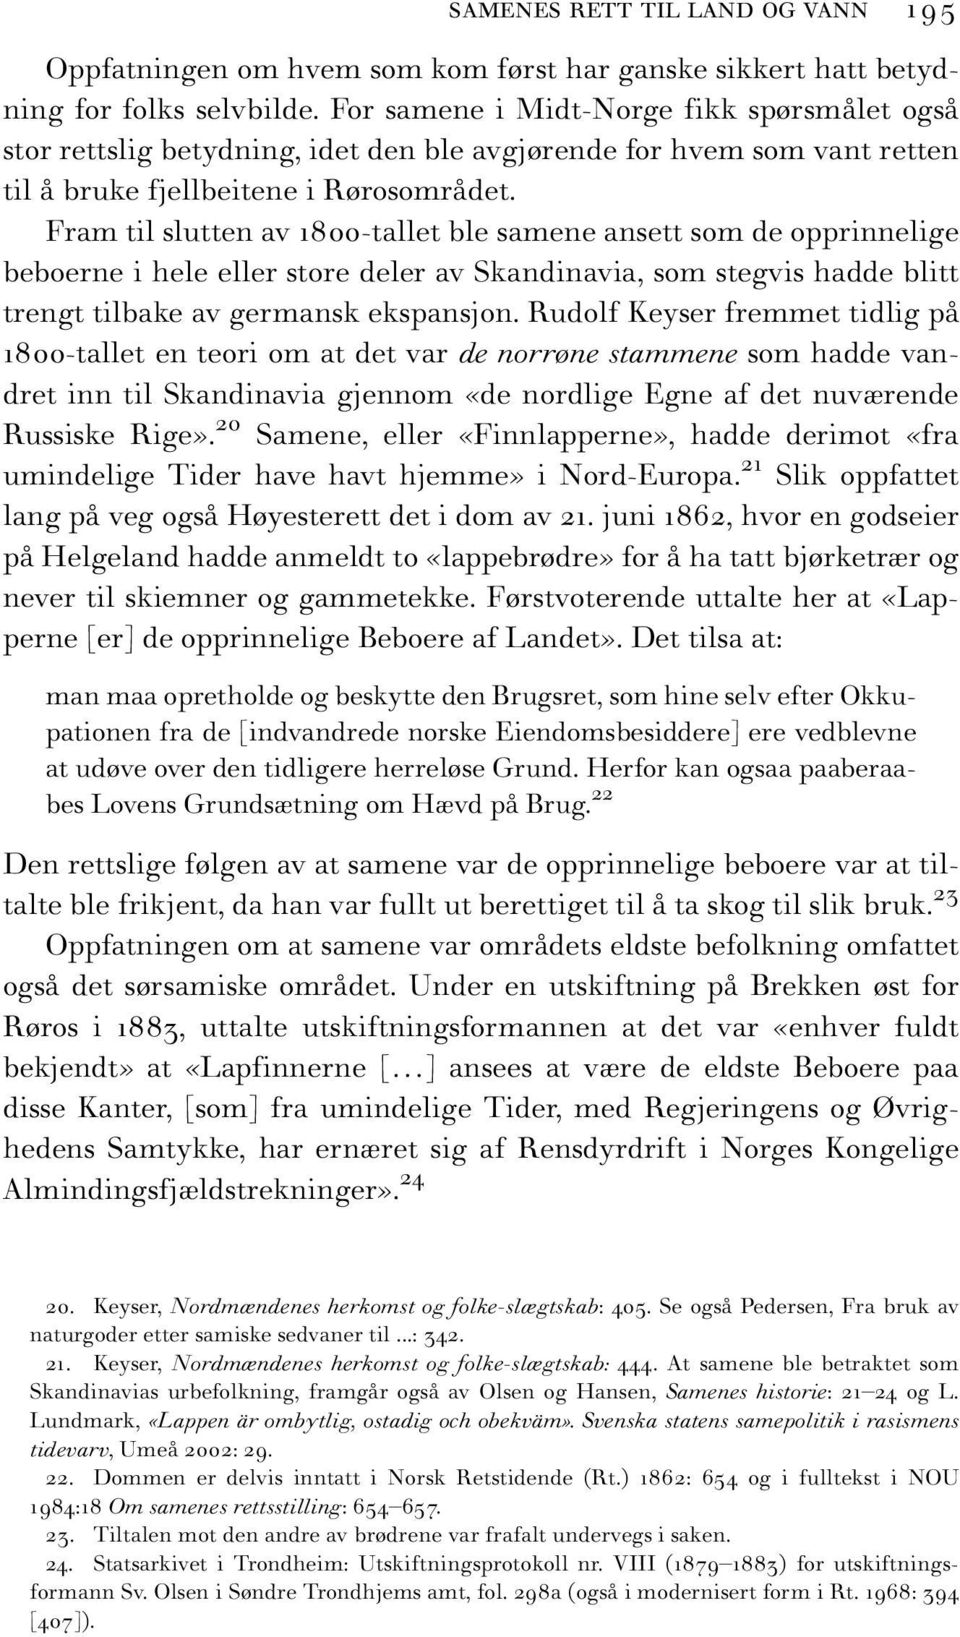 Fram til slutten av 1800-tallet ble samene ansett som de opprinnelige beboerne i hele eller store deler av Skandinavia, som stegvis hadde blitt trengt tilbake av germansk ekspansjon.